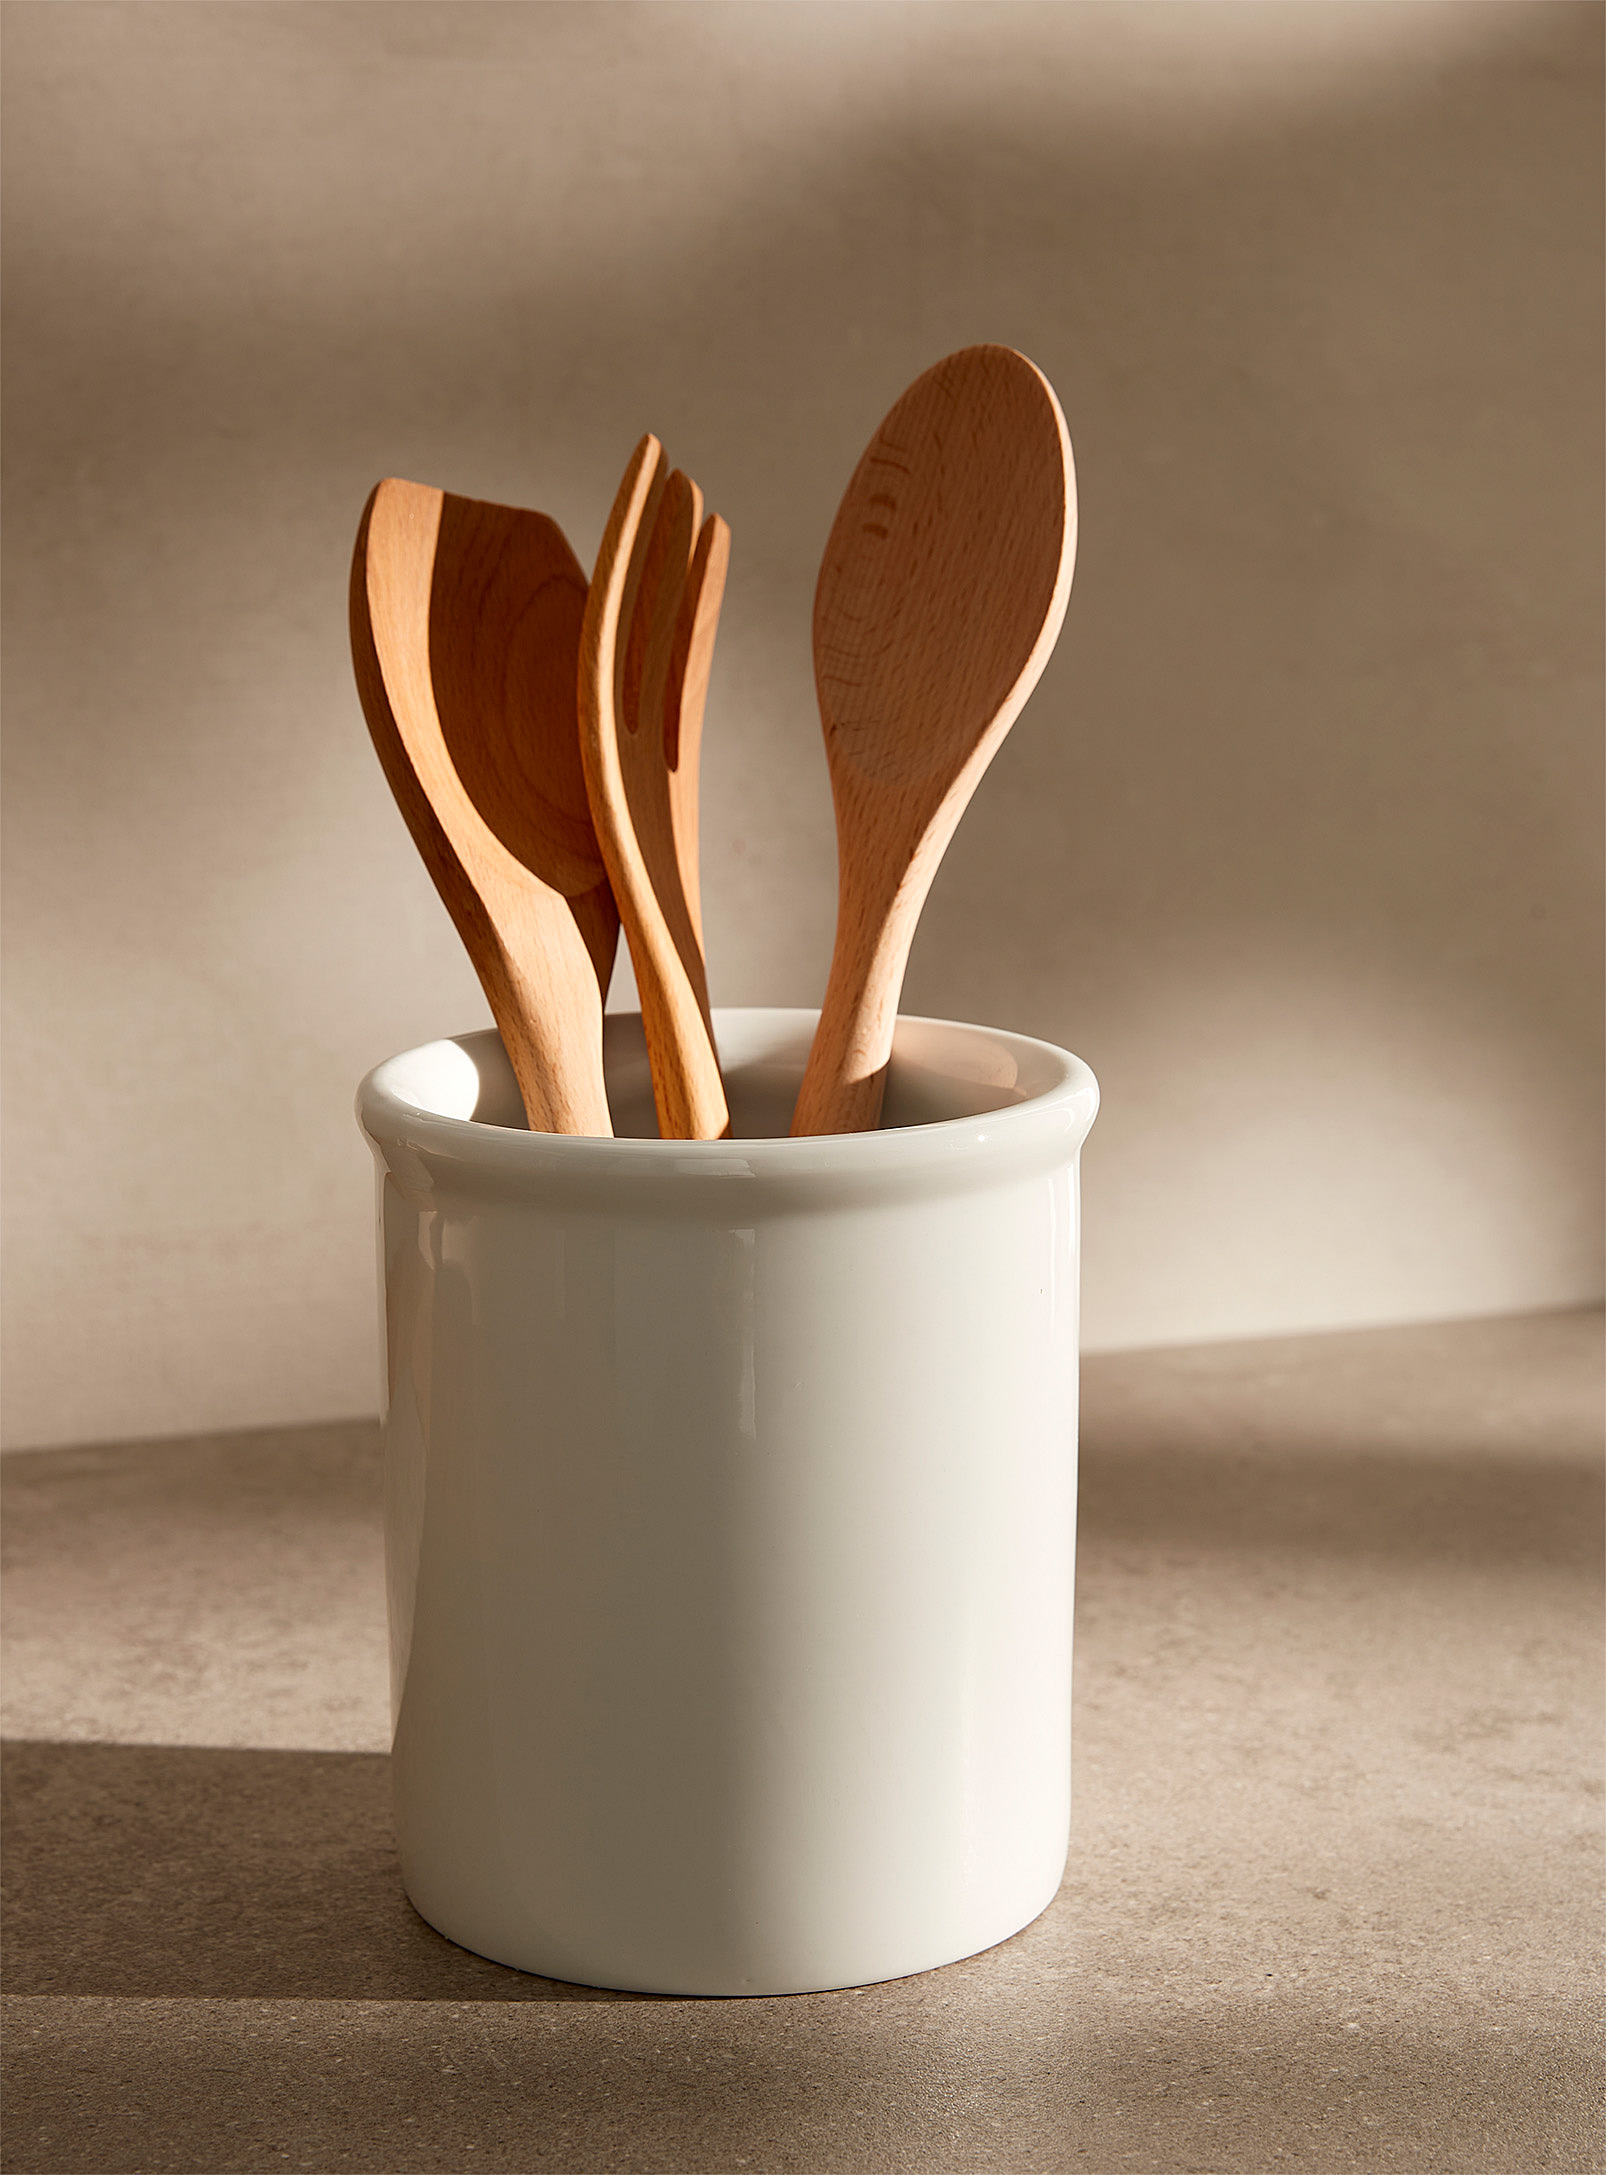 Simons Maison - White ceramic utensil holder